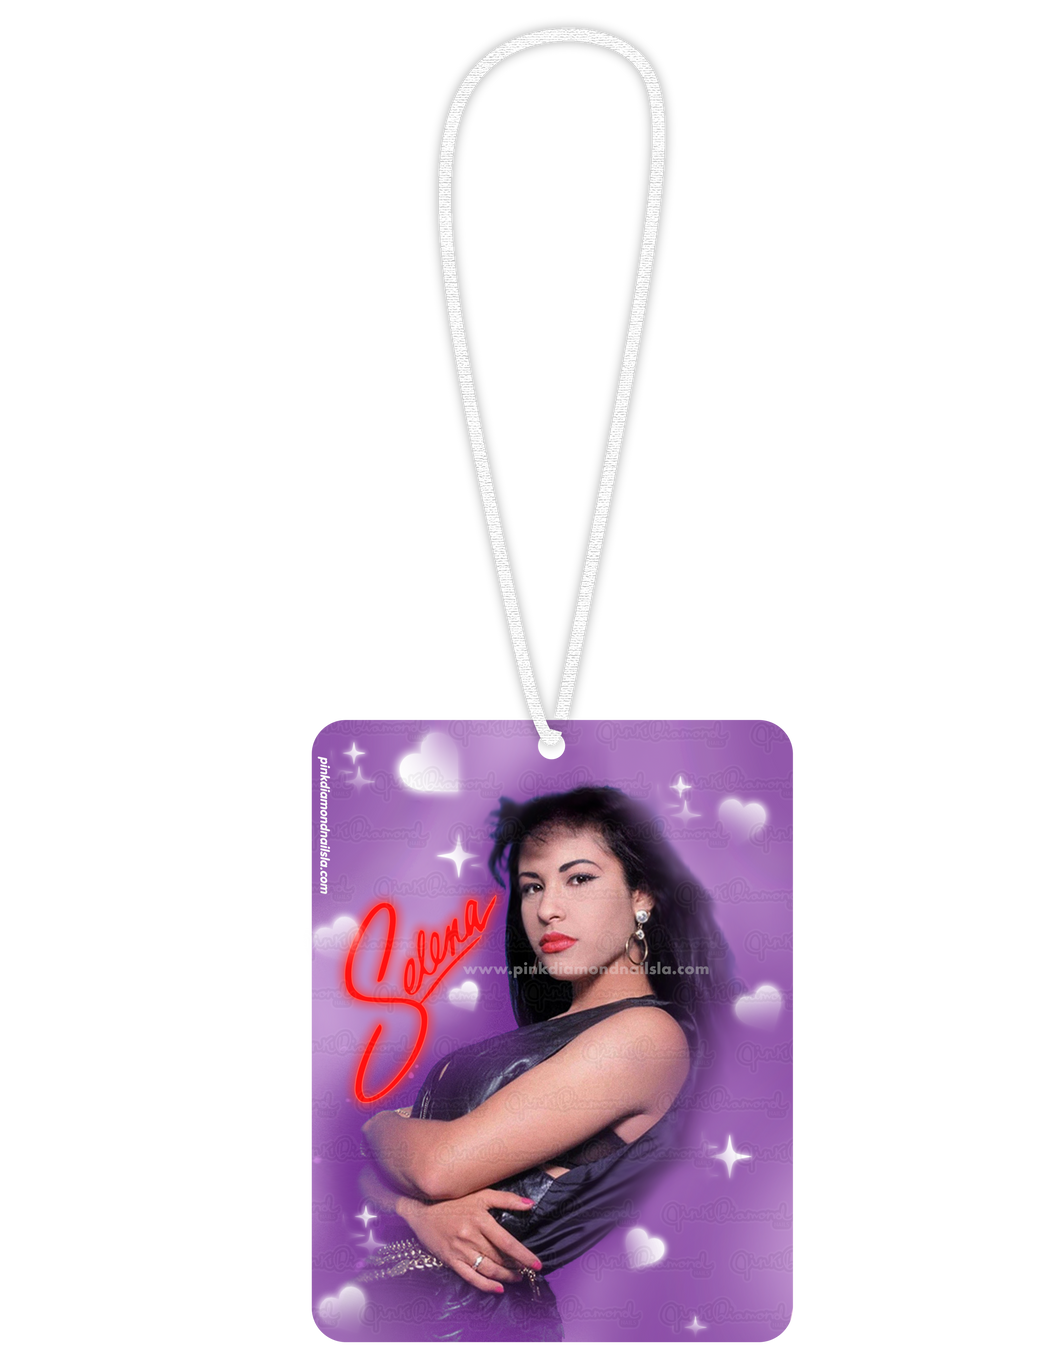 Selena (Hearts & stars) - Hangable ornaments